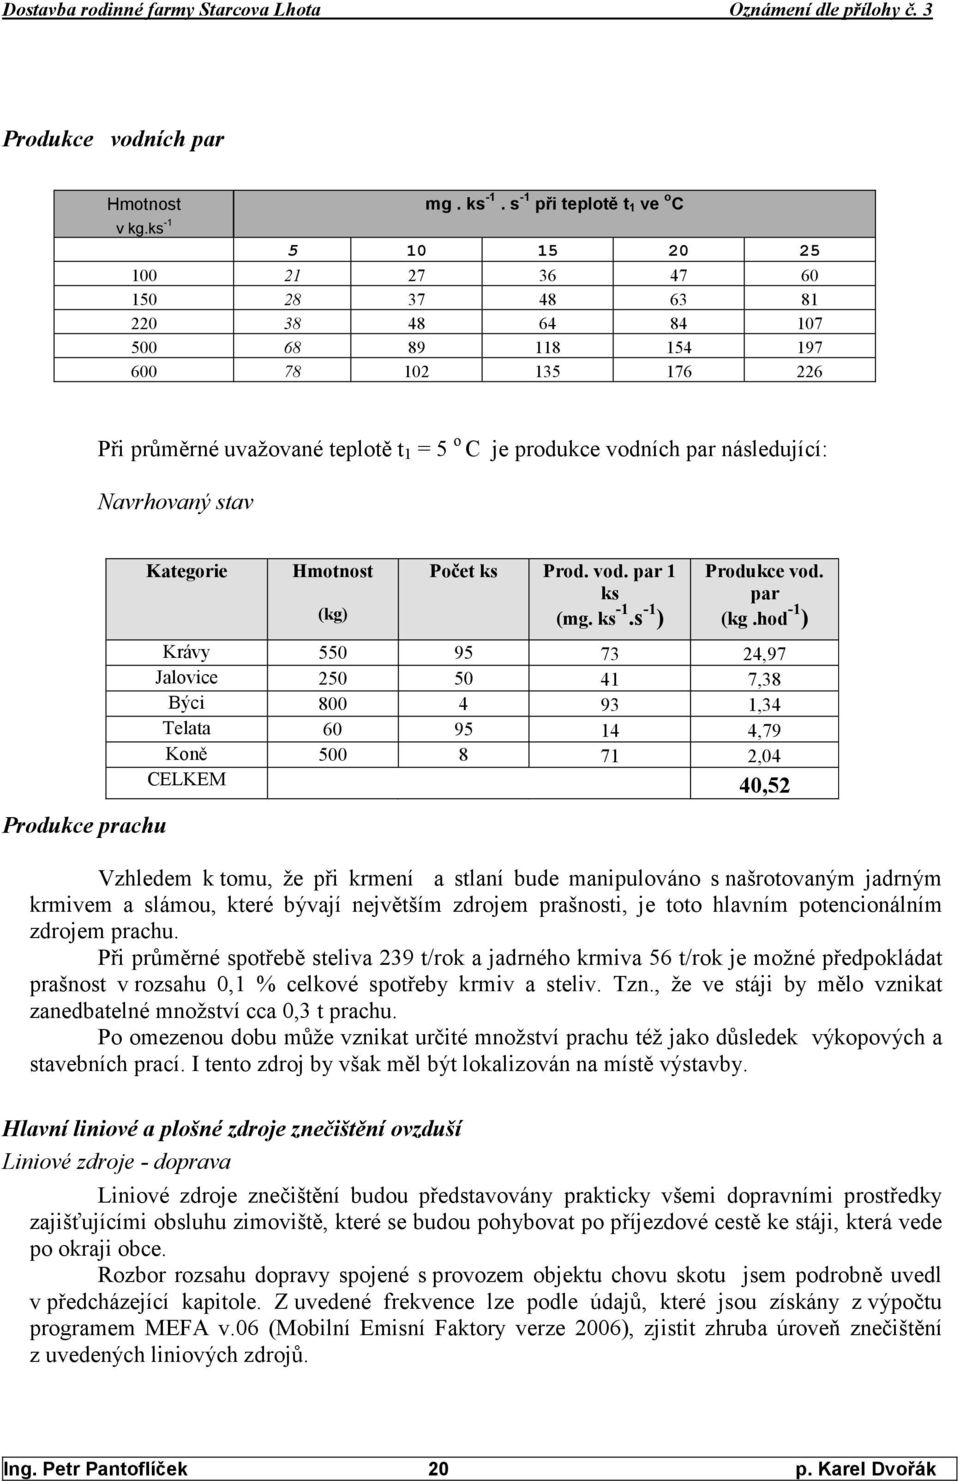 vodních par následující: avrhovaný stav Produkce prachu Kategorie Hmotnost Počet ks Prod. vod. par 1 ks Produkce vod. par (kg) (mg. ks -1.s -1 ) (kg.